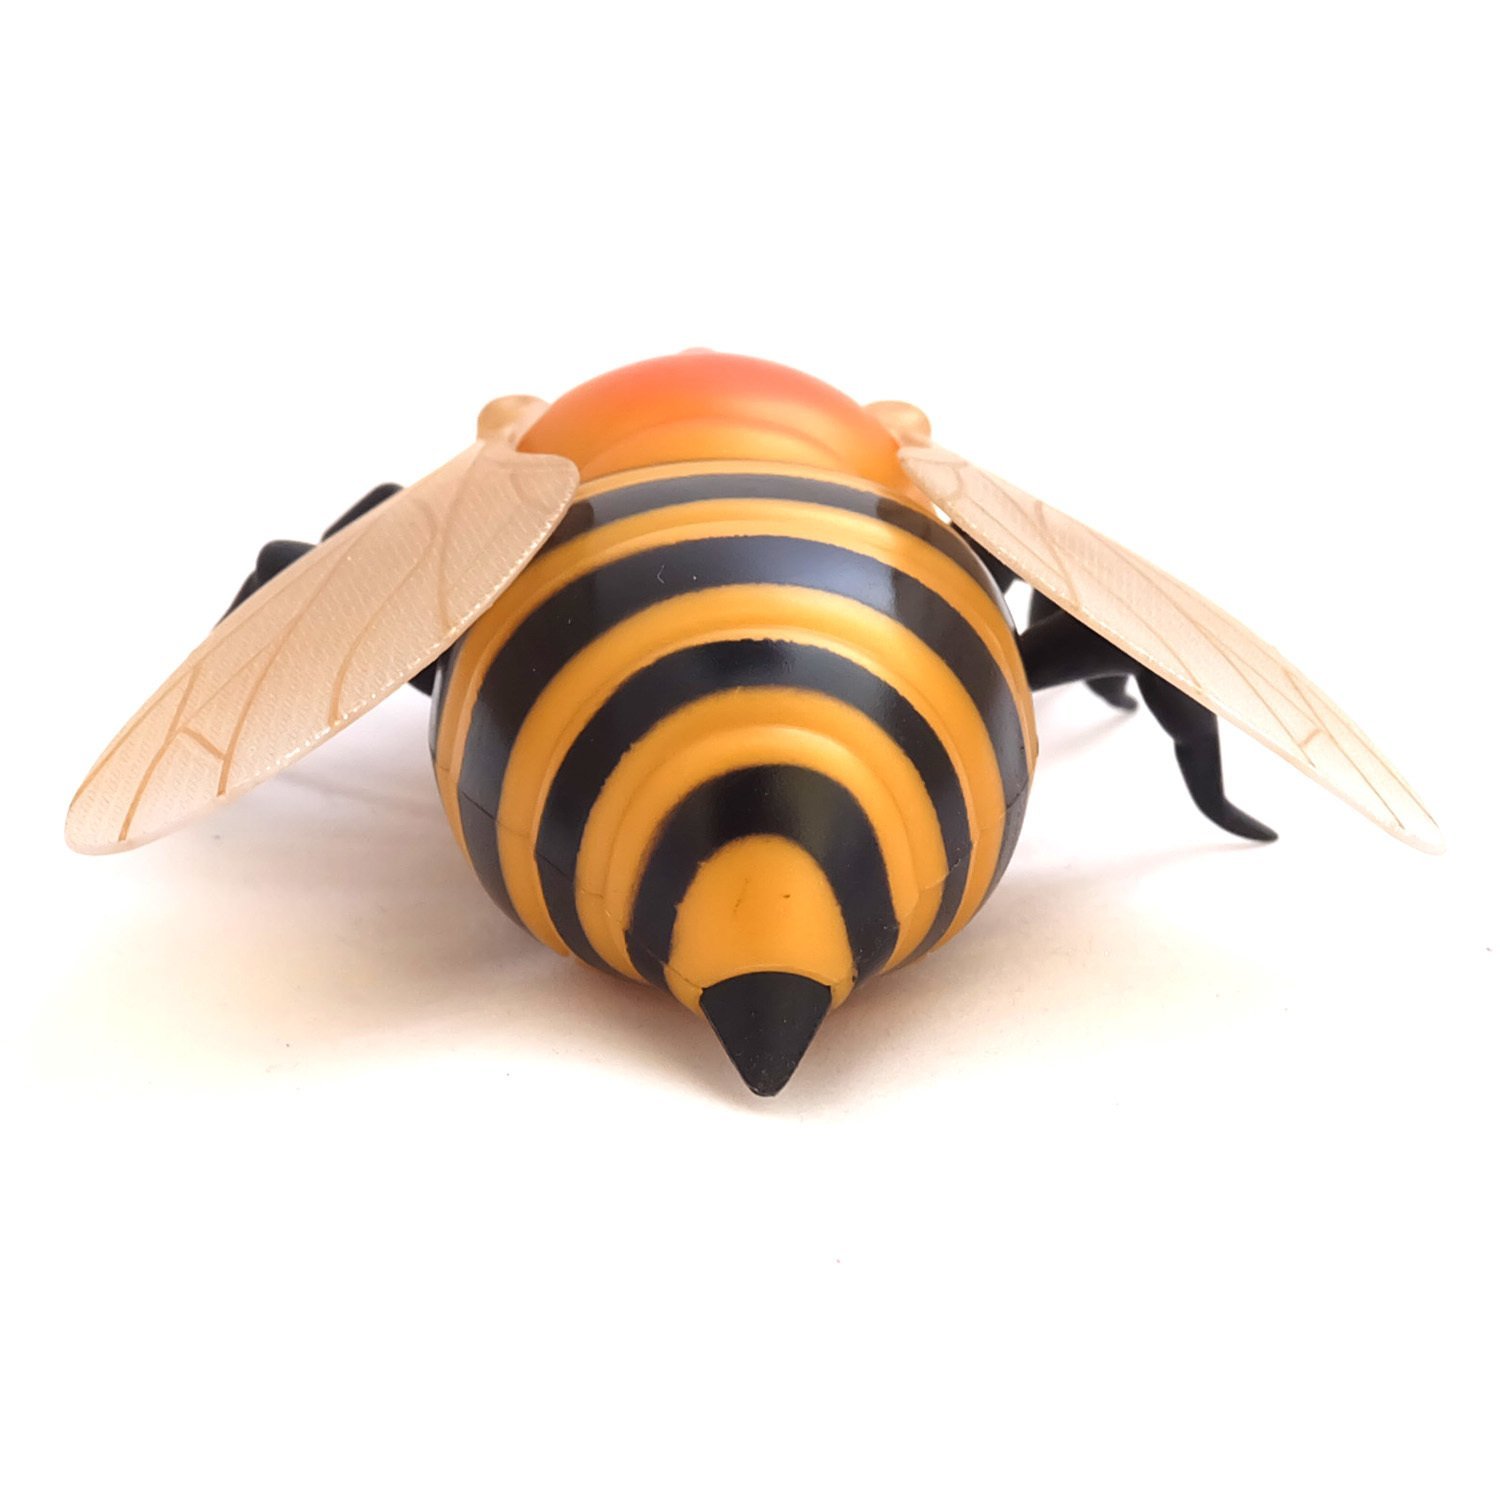 Интерактивная Пчела на радиоуправлении, световые эффекты  